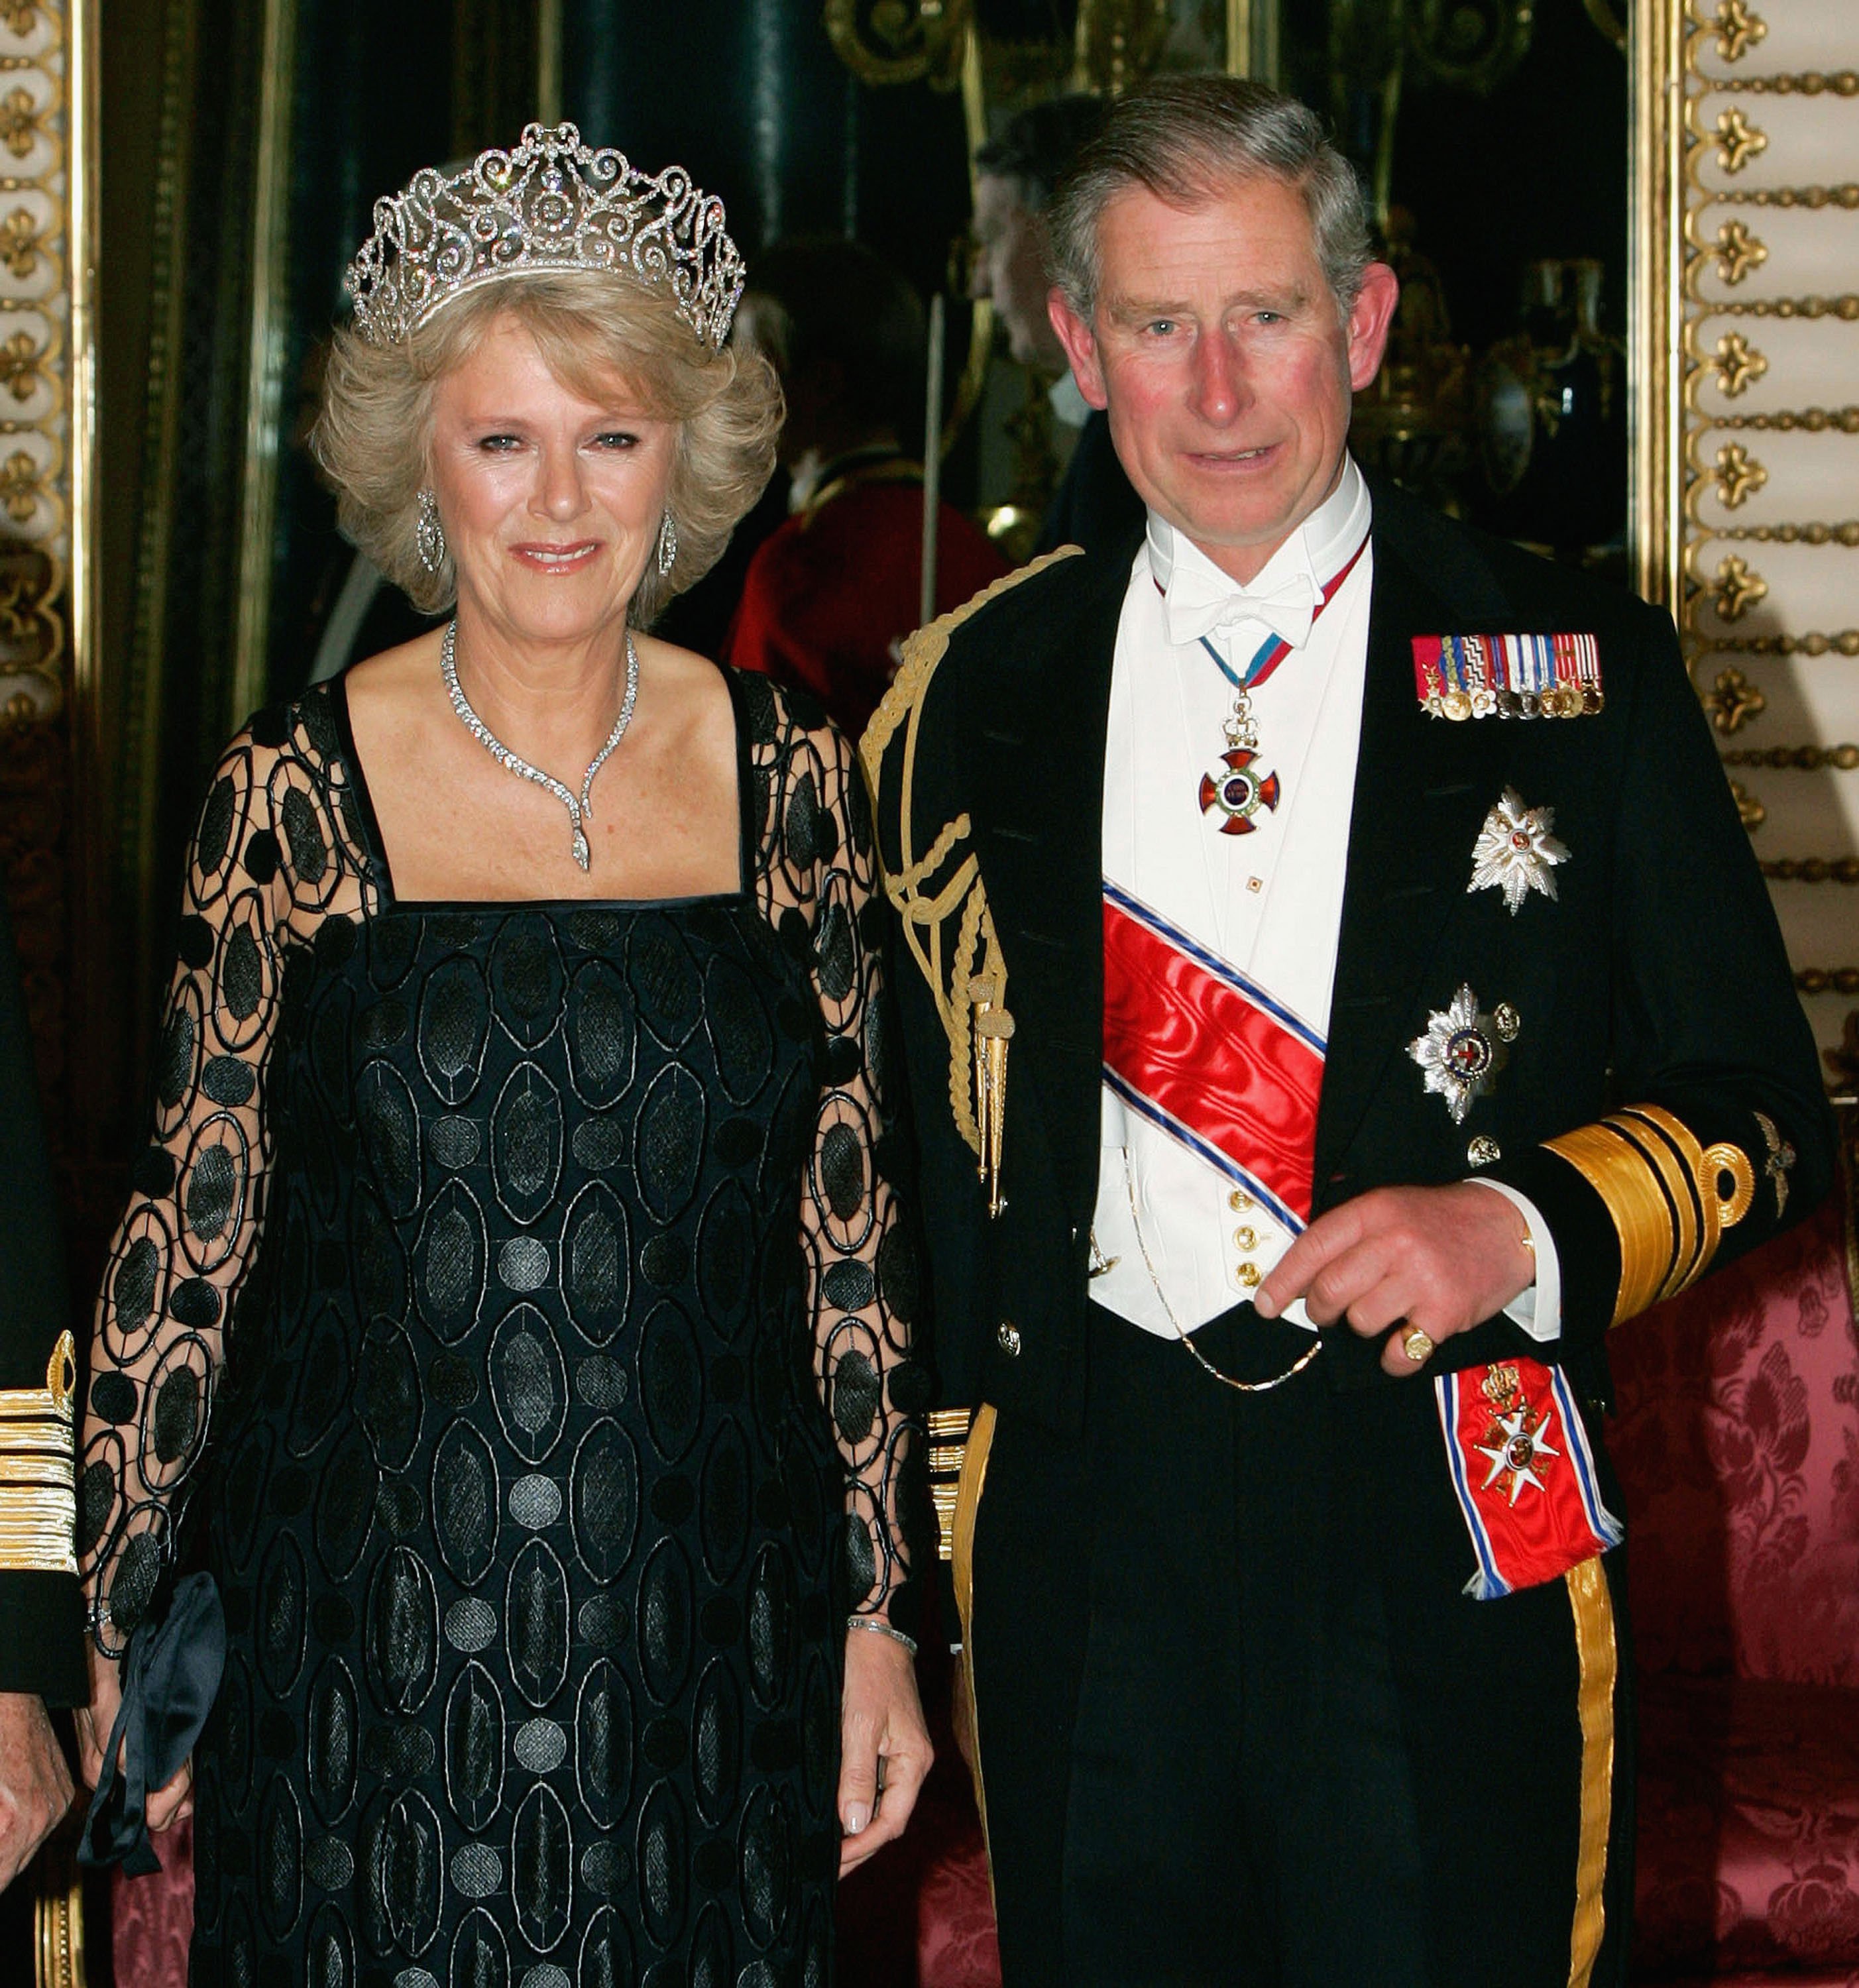 Camilla, duchesse de Cornouailles, arrive avec le prince Charles à un banquet au palais de Buckingham le 25 octobre 2005 à Londres, en Angleterre | Source : Getty Images